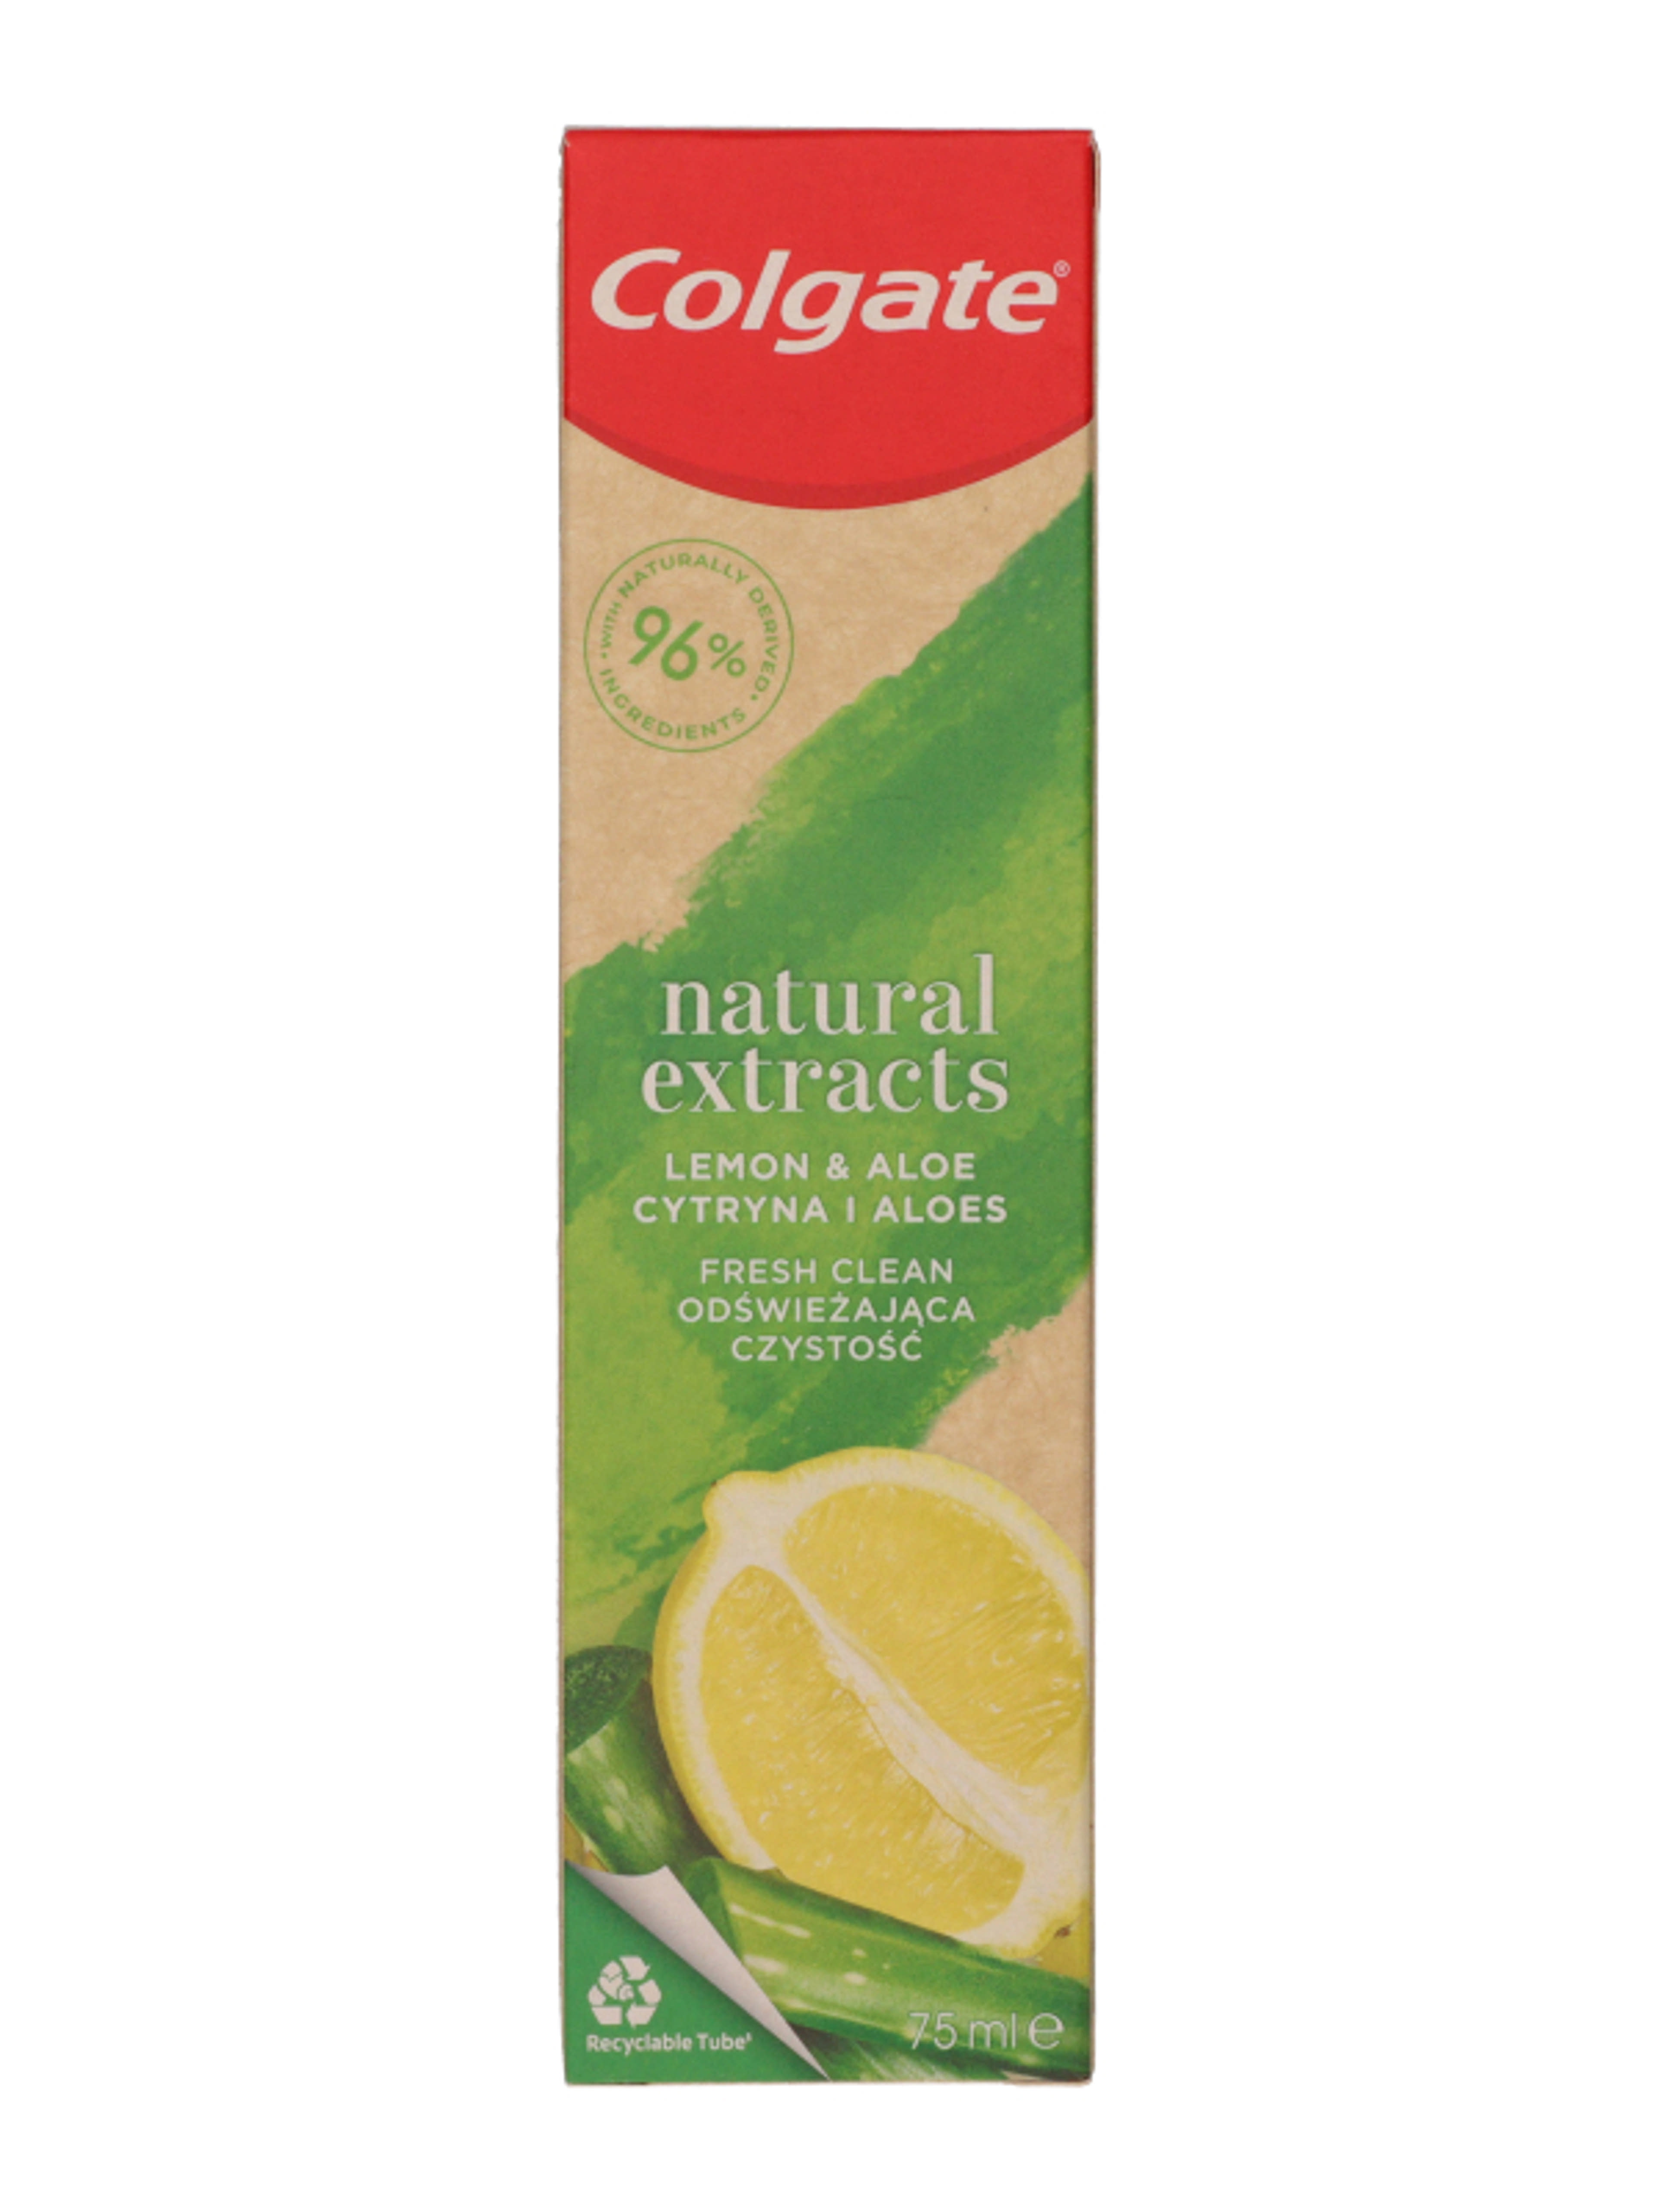 Colgate Natural Lemon fogkrém - 75 ml